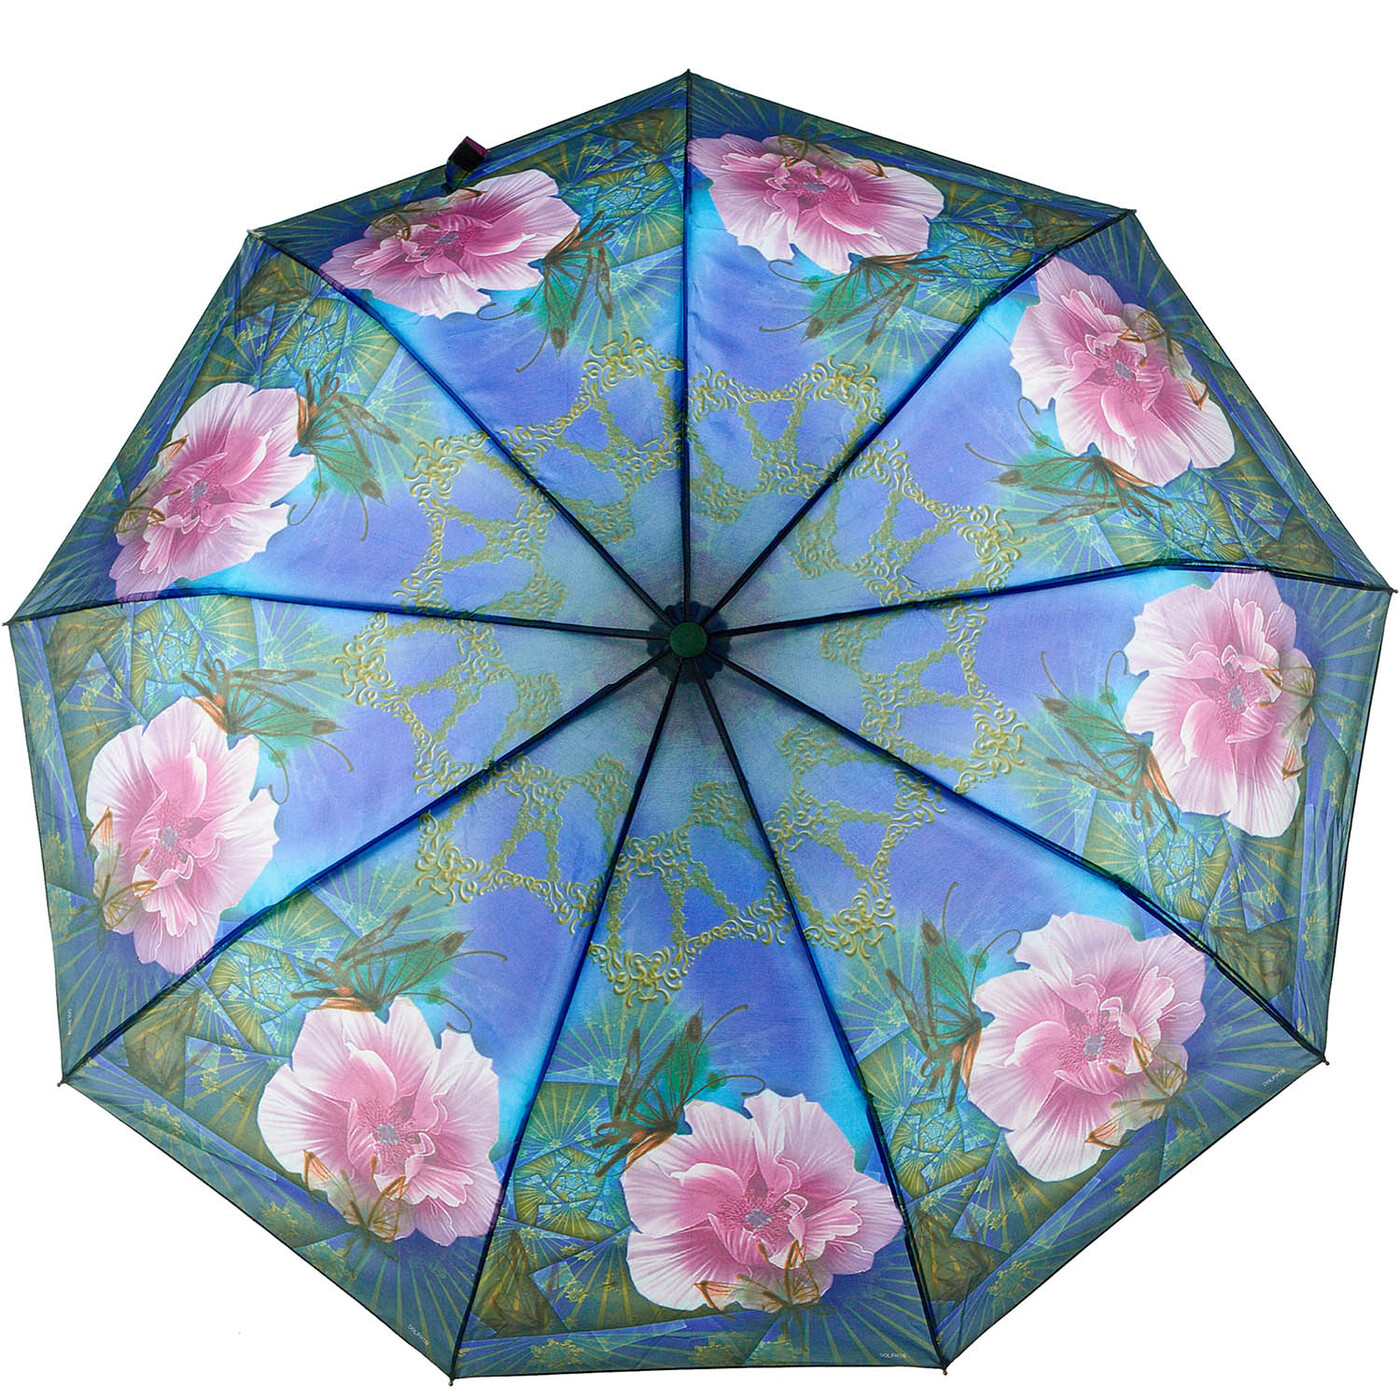 Купить зонт женский на озон. Зонт Dolphin женский. Зонт Dolphin Umbrella. Зонт женский полуавтомат Dolphin Umbrellas. Зонт с цветами.